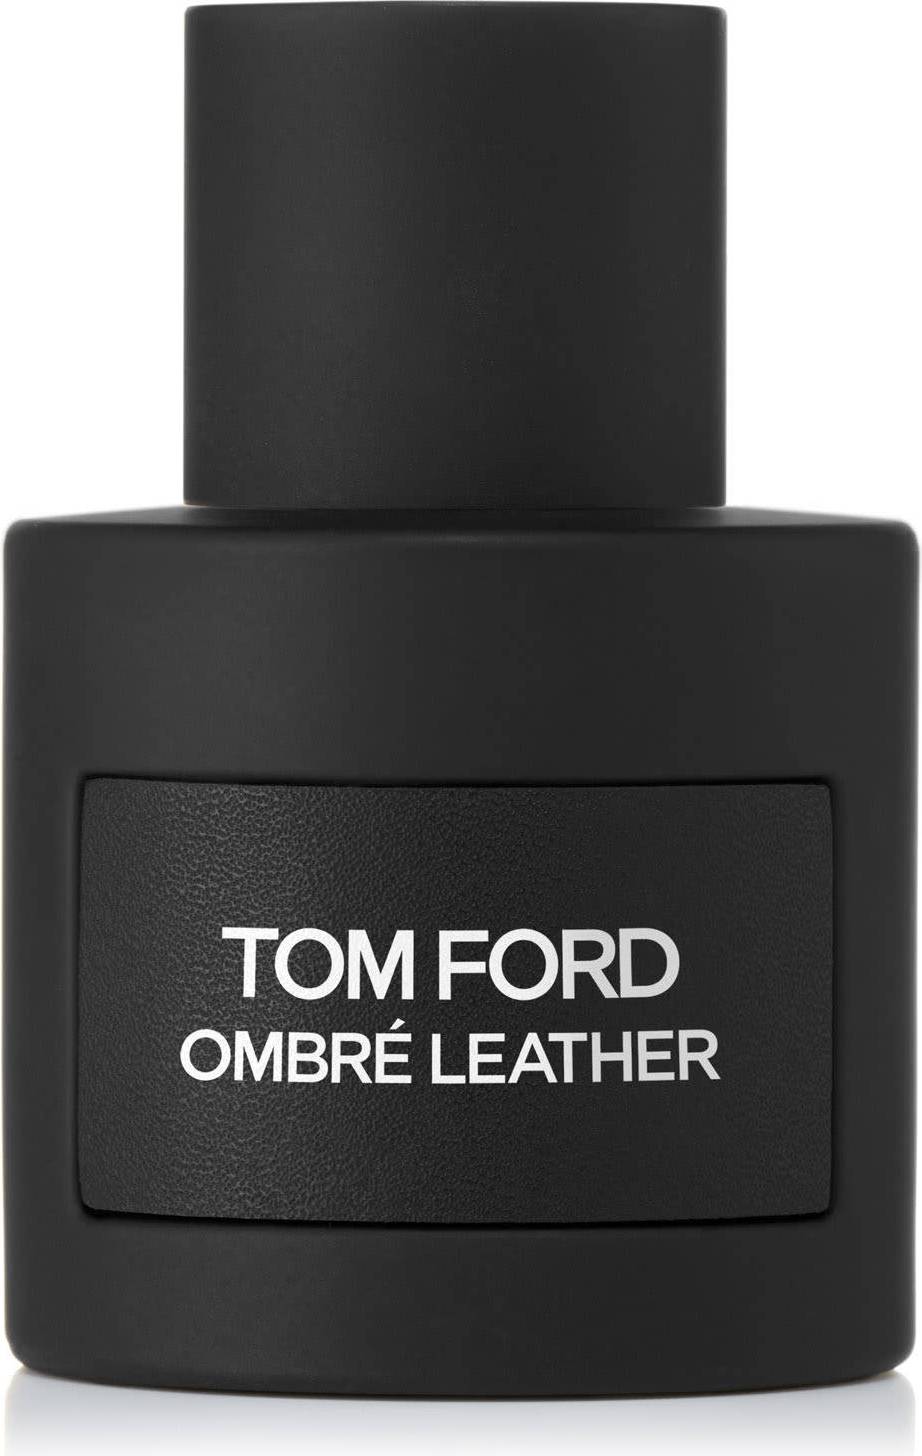 Tom ford ombré leather eau de parfum • See prices